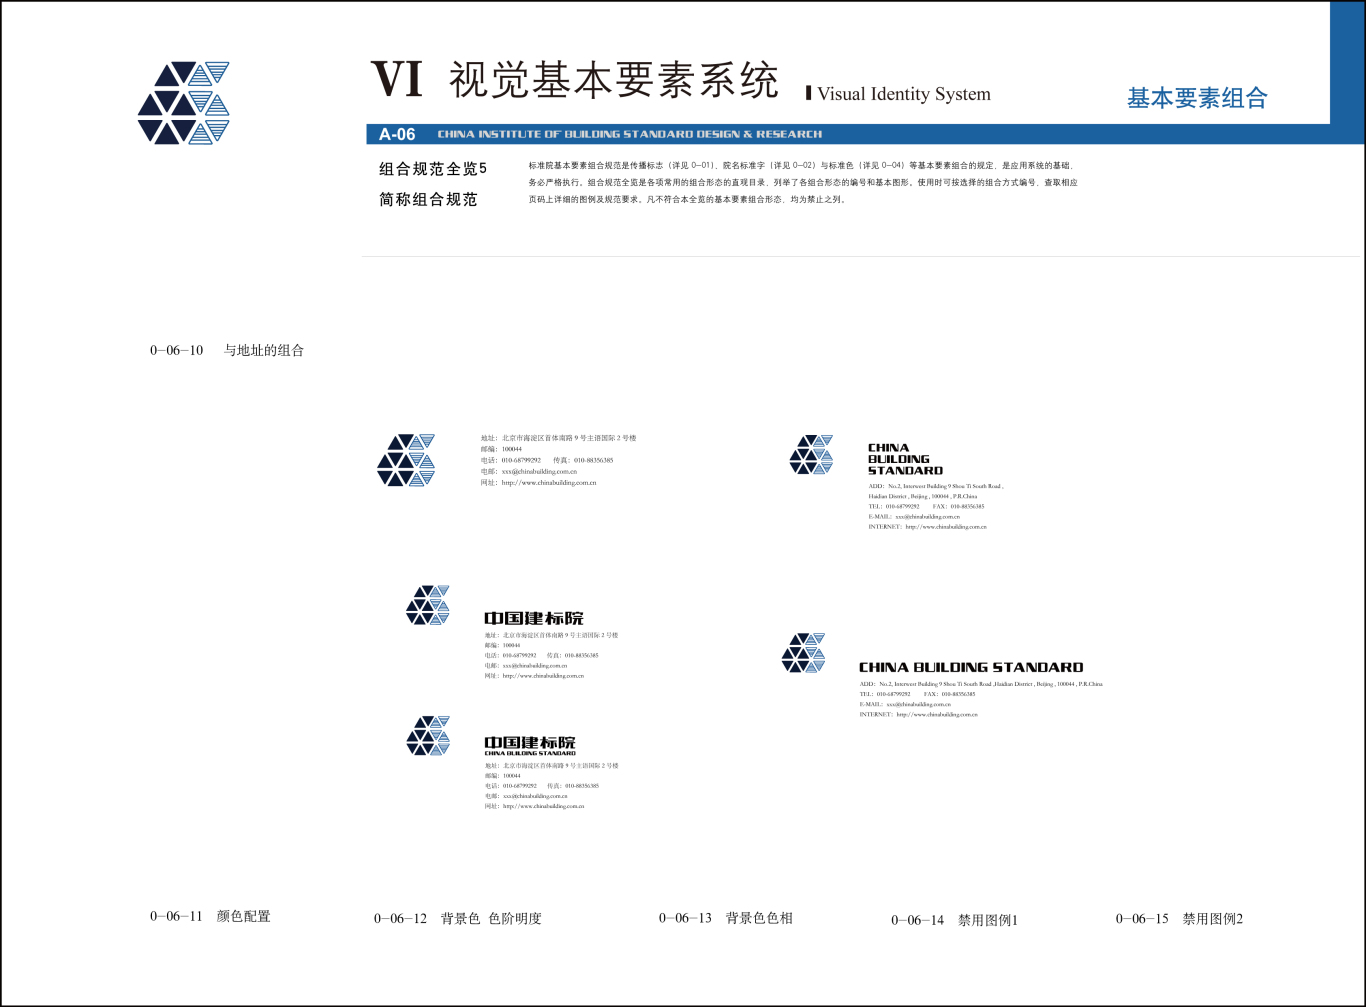 中國建筑標準設計研究院 央企VI設計圖8